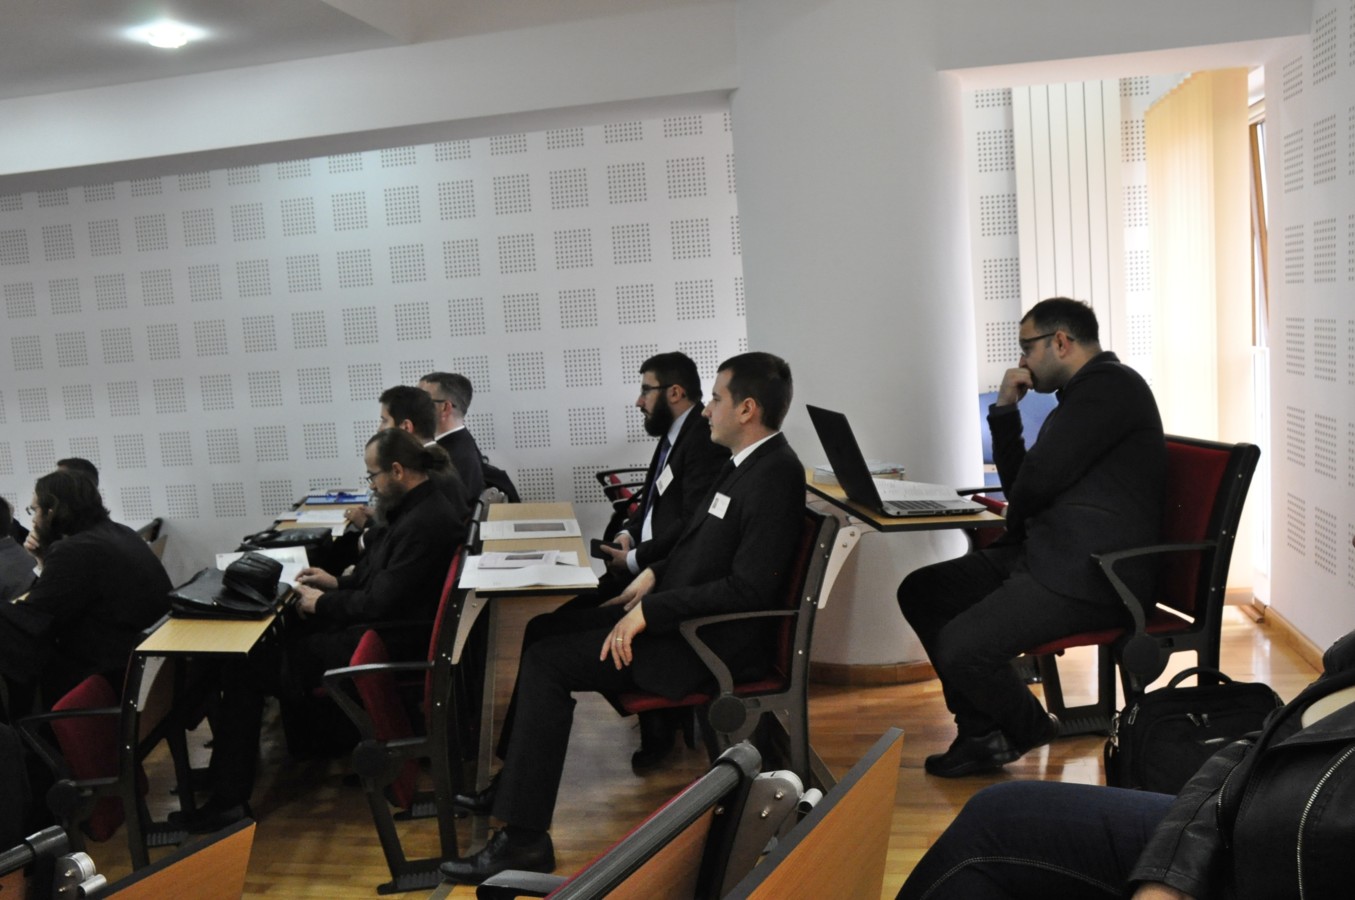 Facultatea de Teologie Ortodoxă din Cluj-Napoca, gazda Conferinței Naționale a Doctoranzilor Teologi